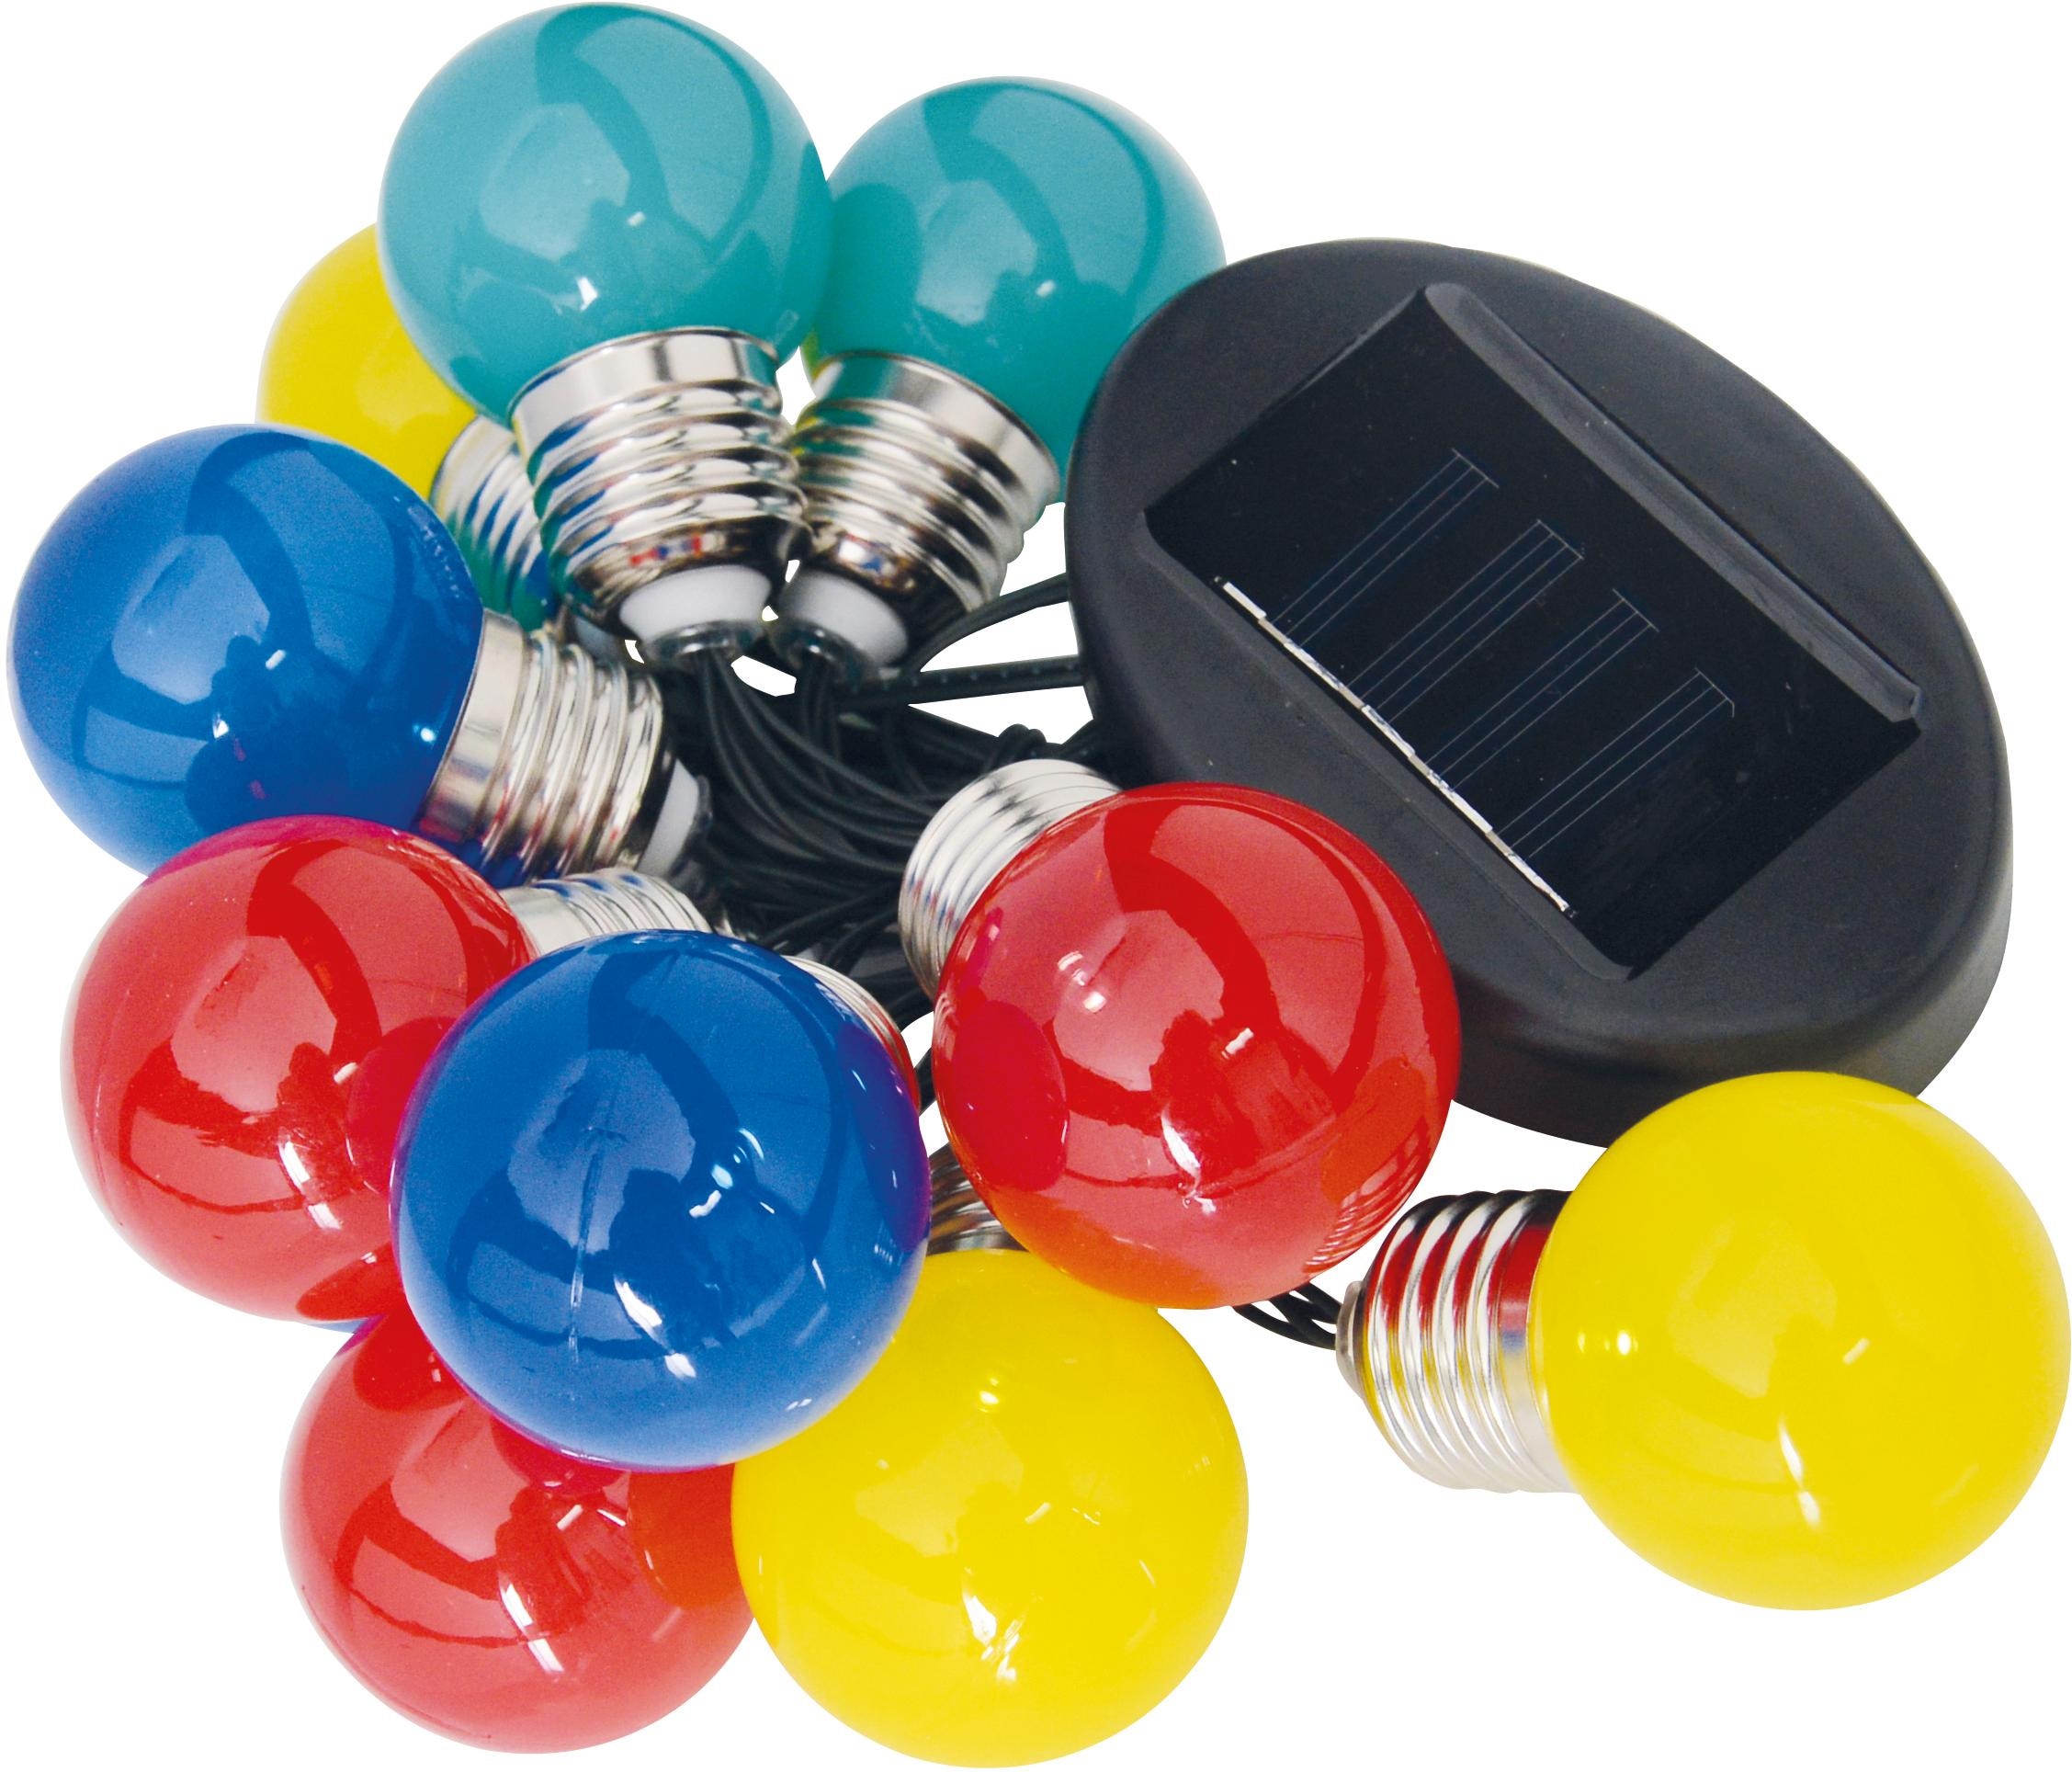 näve LED-Lichterkette »SOLARLICHTERKETTE« kaufen auf Raten